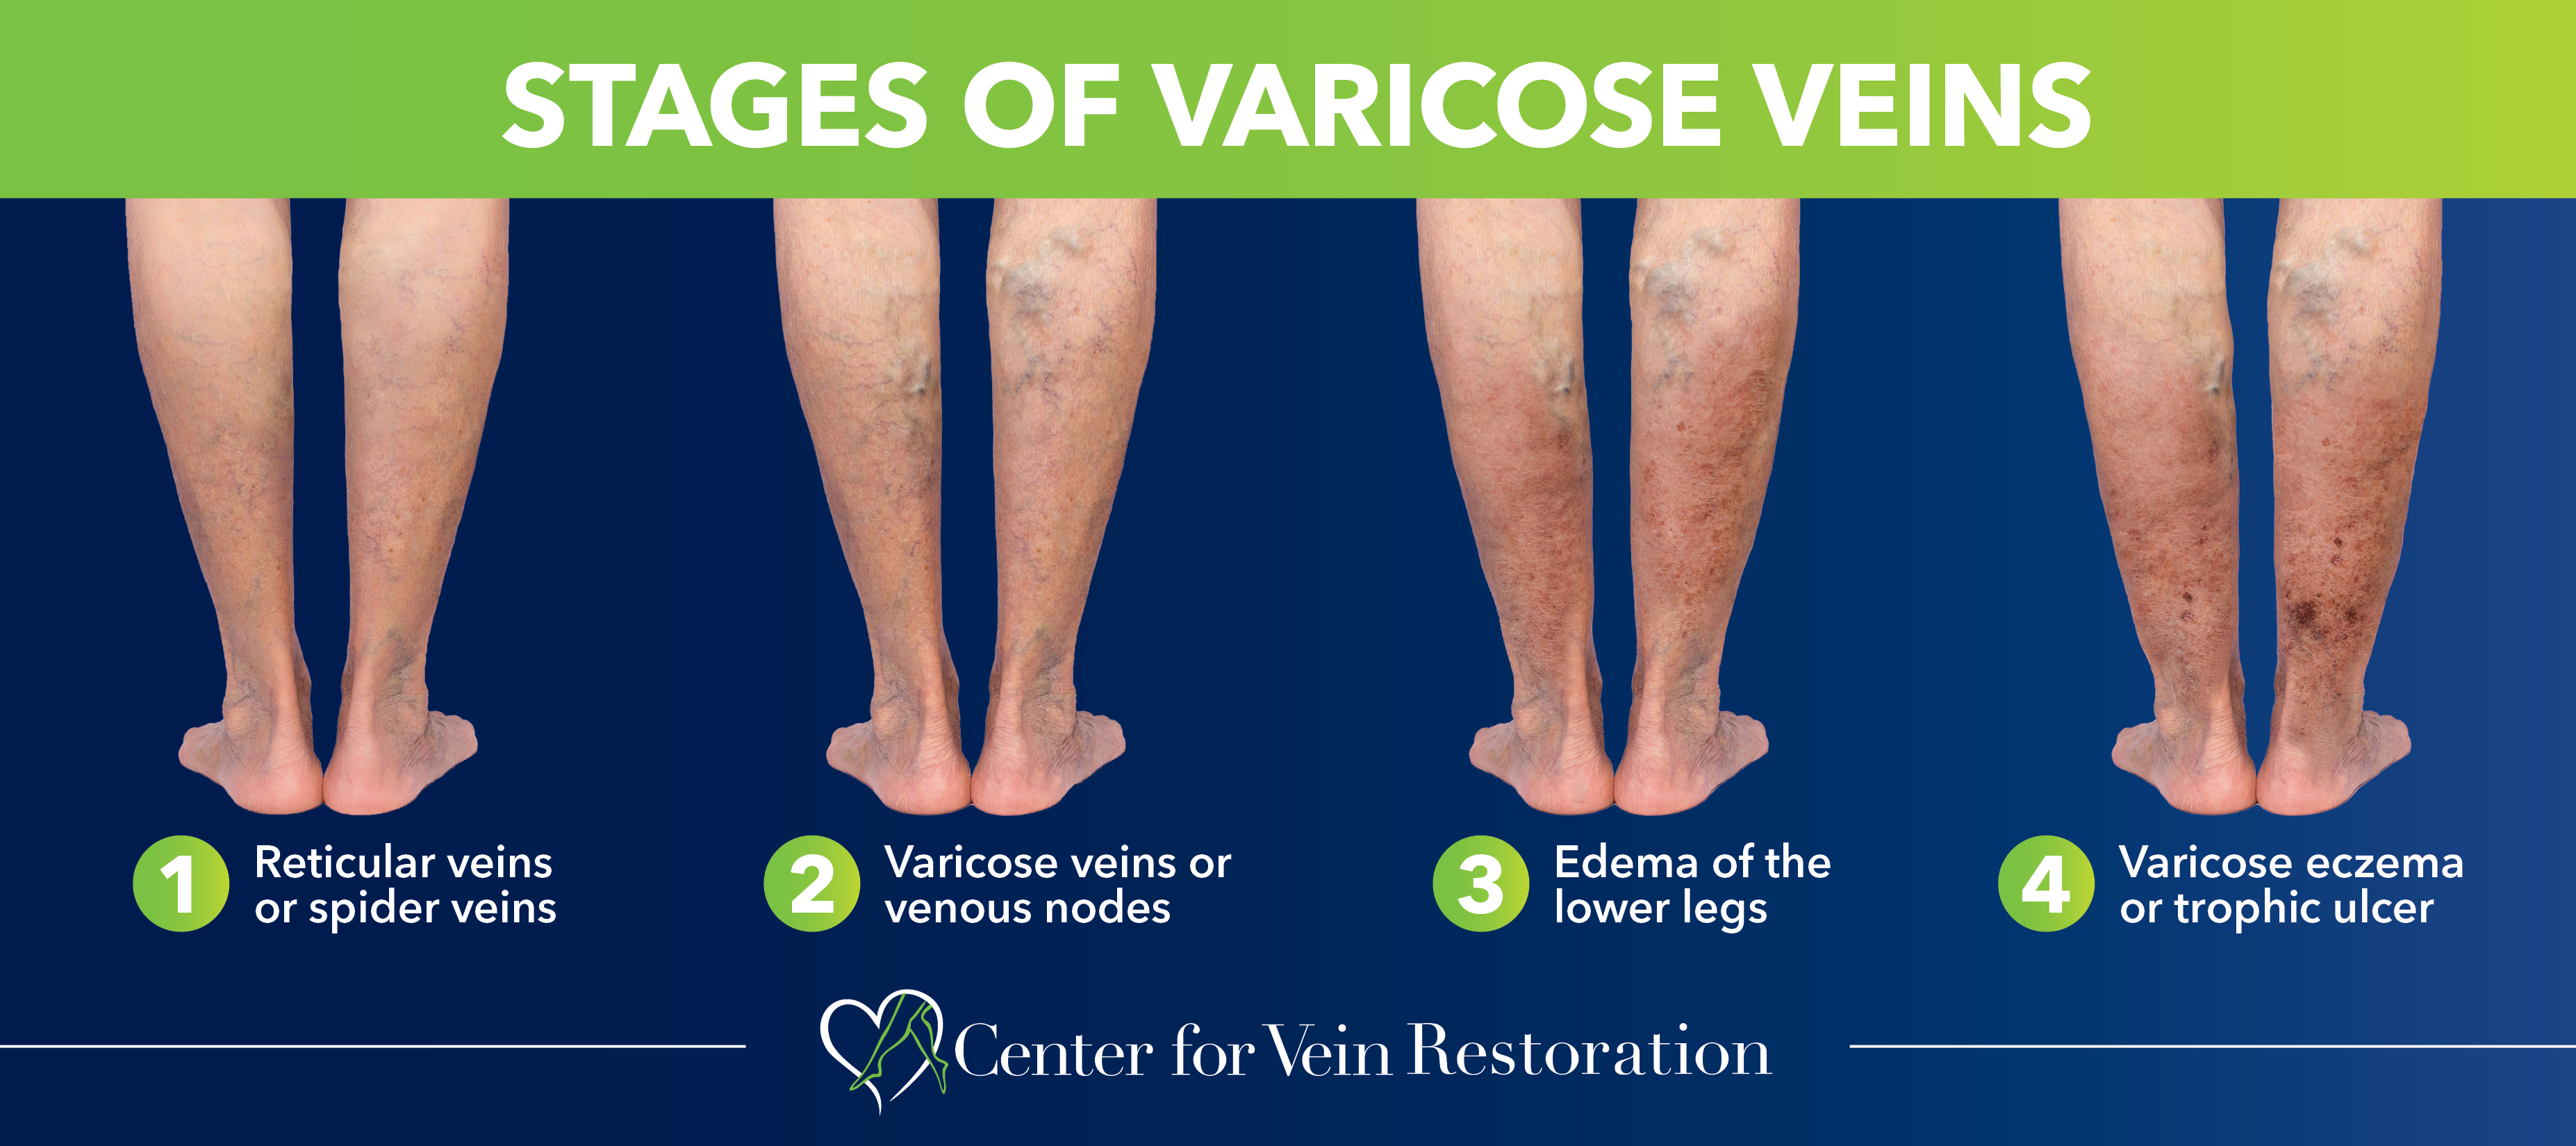 5 Ways to Prevent Varicose Vein During Work by USA Vein Clinics